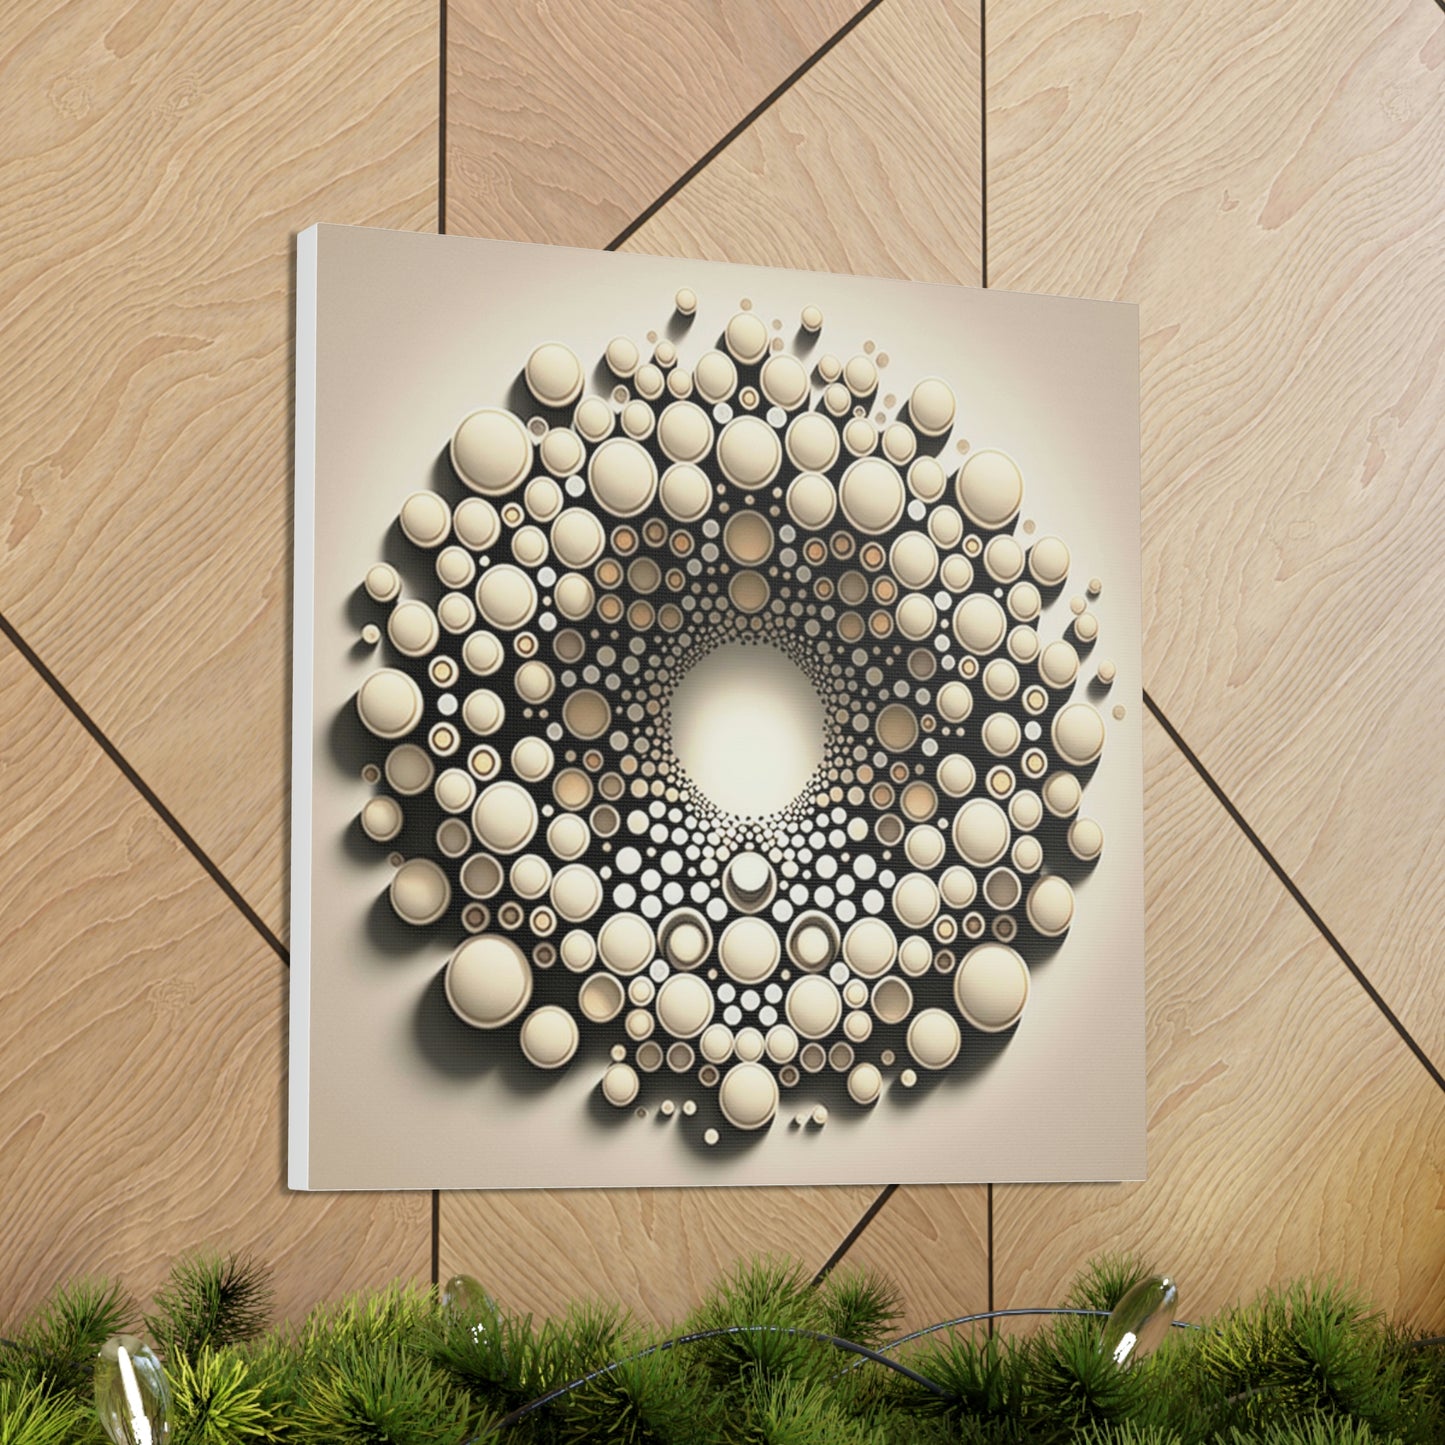 Abstract 3d circle art